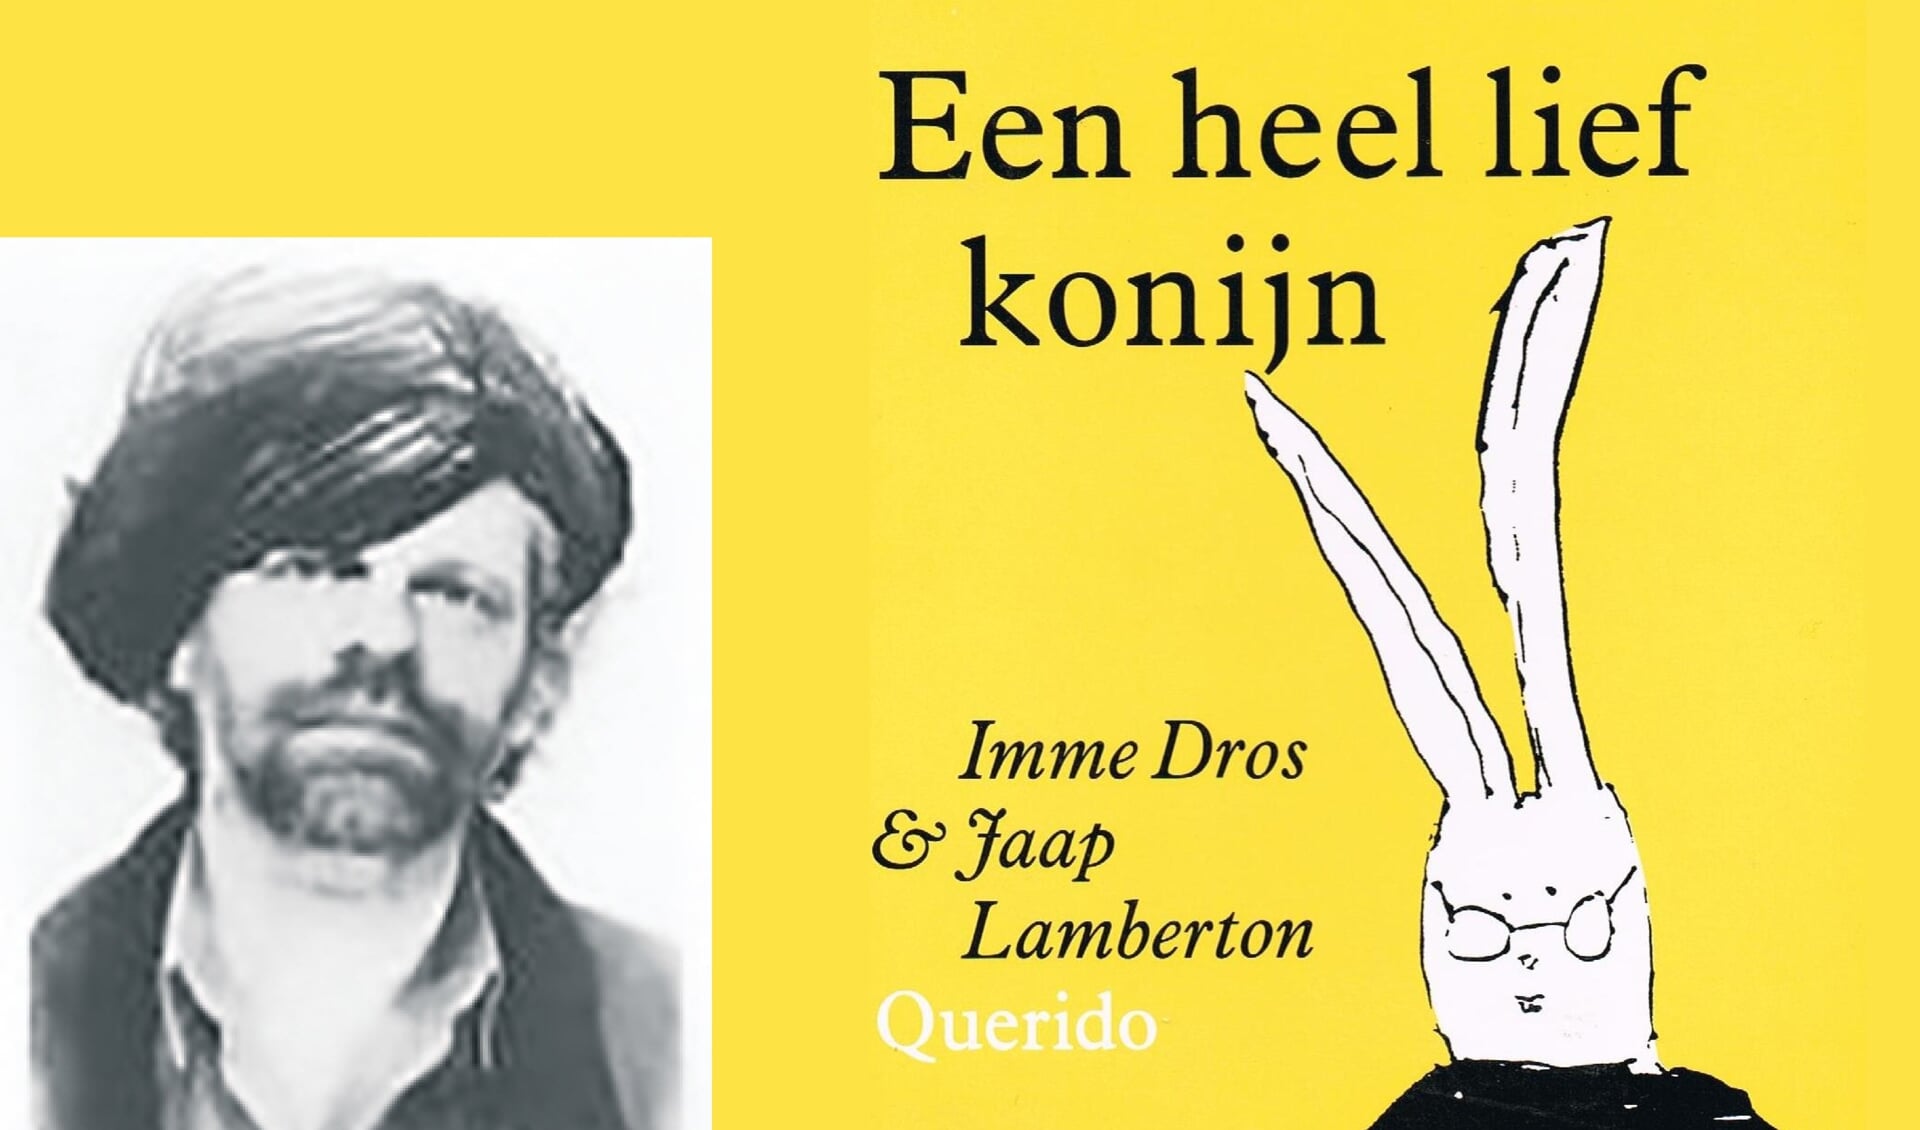 In 1993 kreeg het bekroonde kinderboek 'Een heel lief konijn' de Libris Woutertje Pieterse-prijs toegekend, waarvoor Lamberton de illustraties had gemaakt.